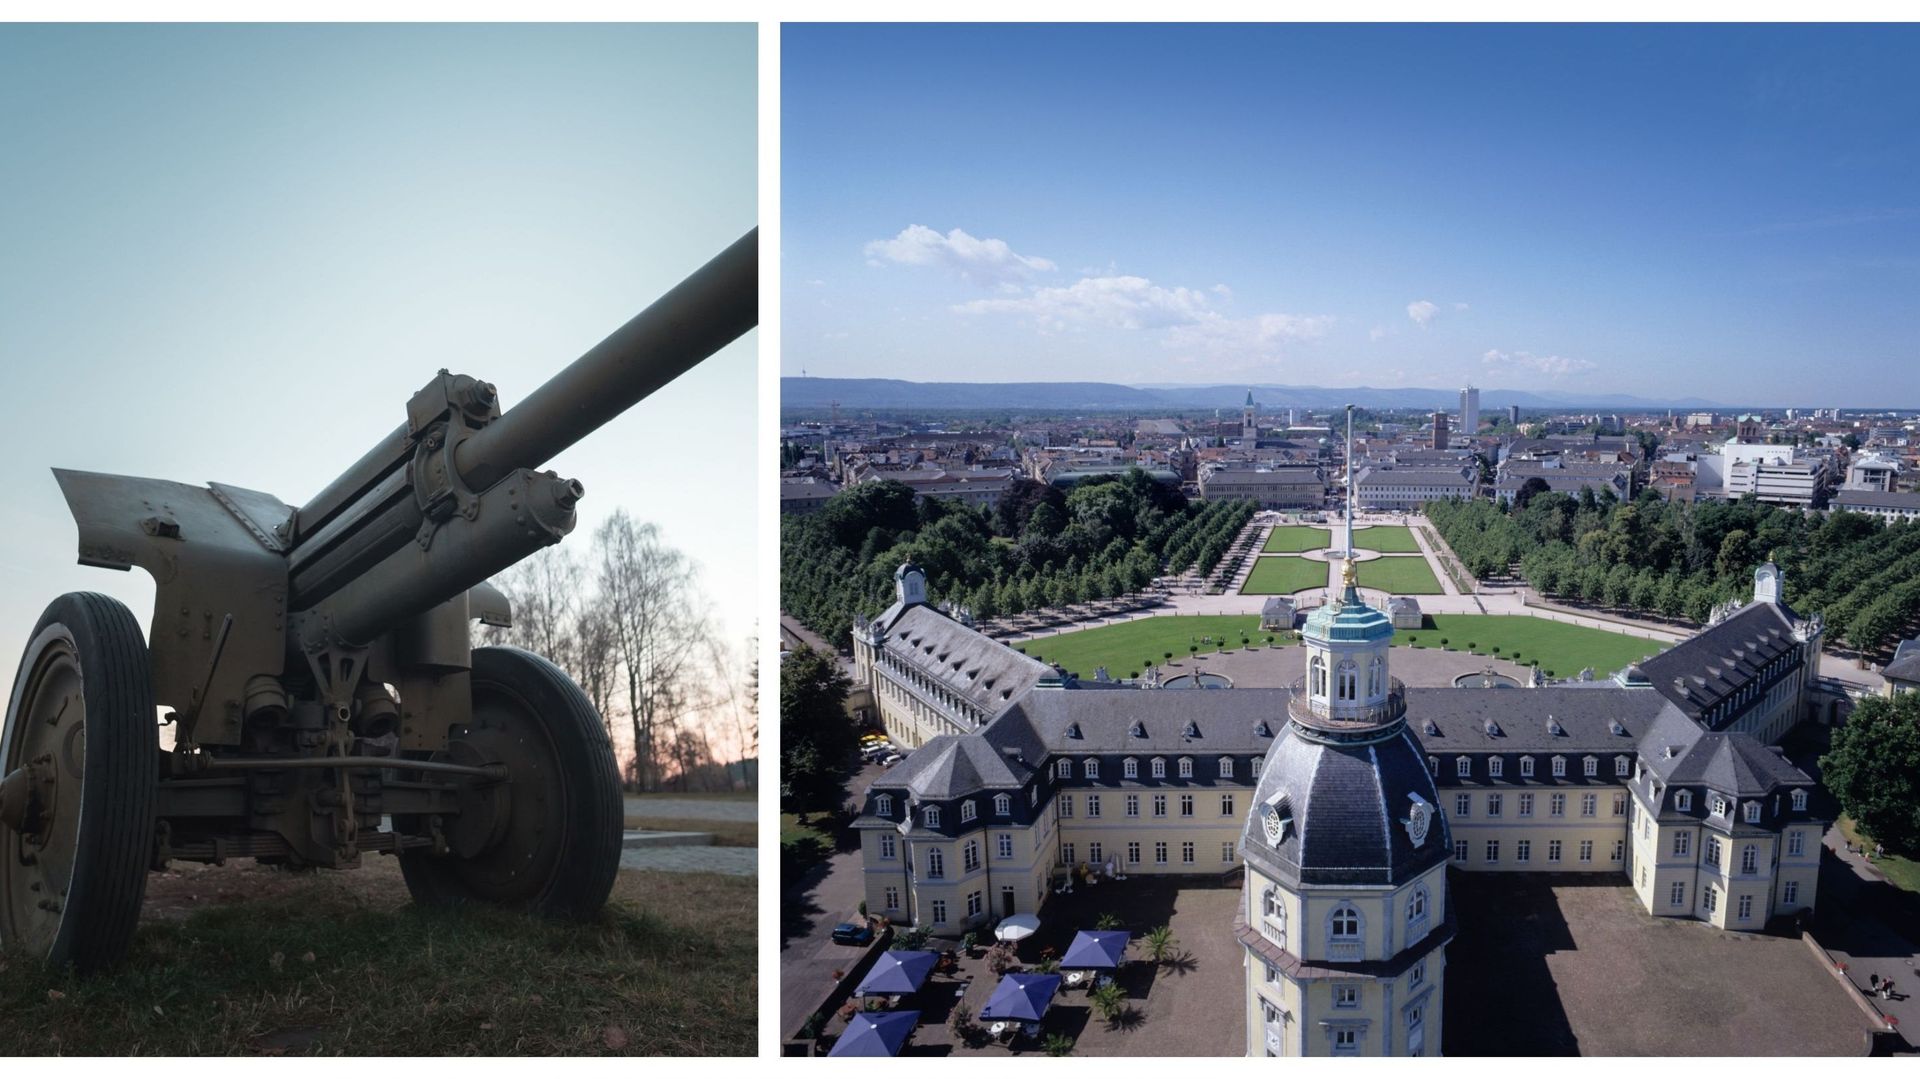 Canon (soviétique) de la seconde guerre mondiale et vue du château de Karlsruhe (illustrations)